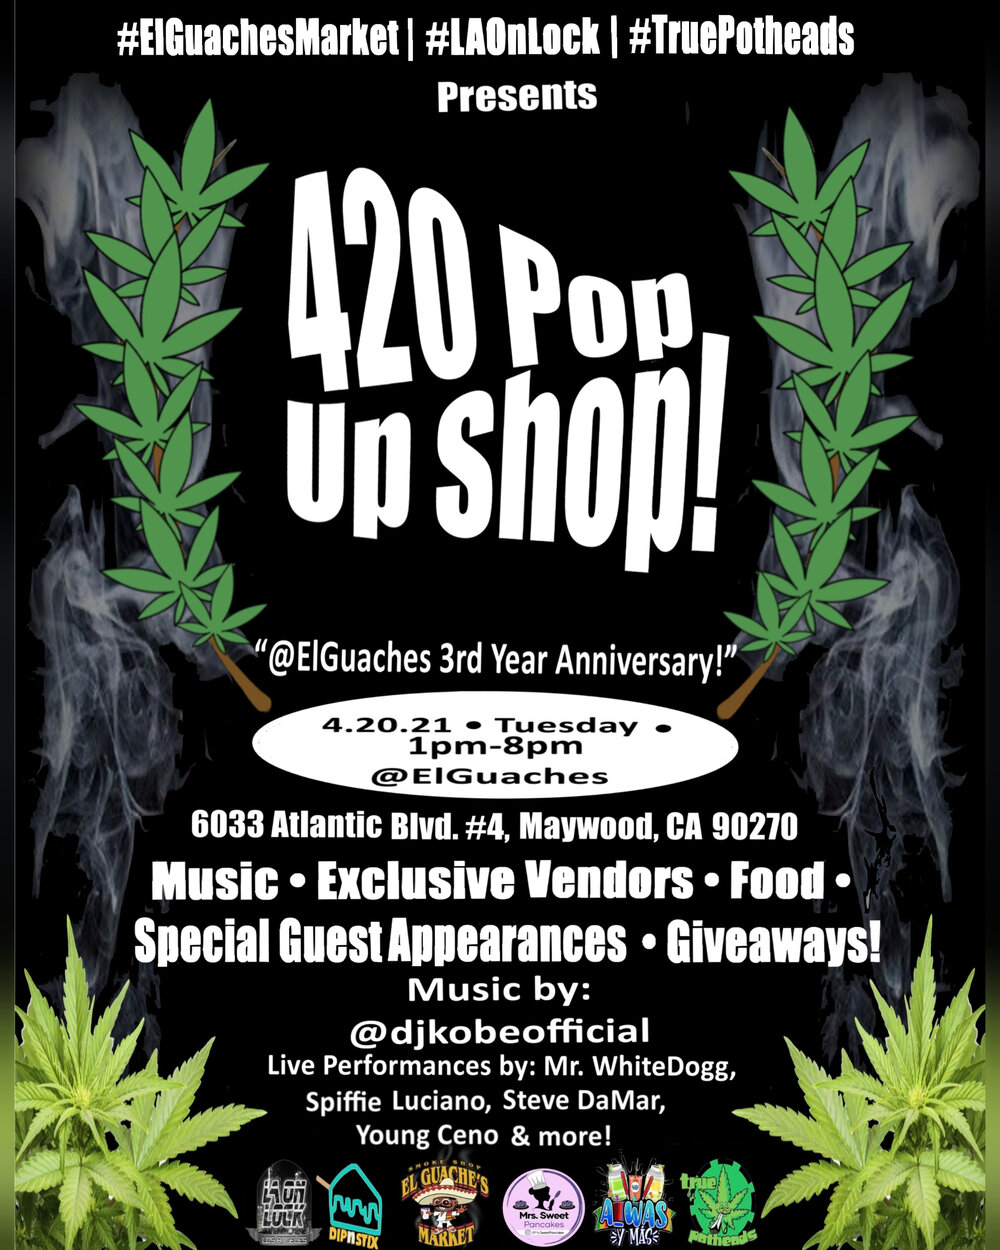 420 Pop Shop at El Guache's Market LA On Lock